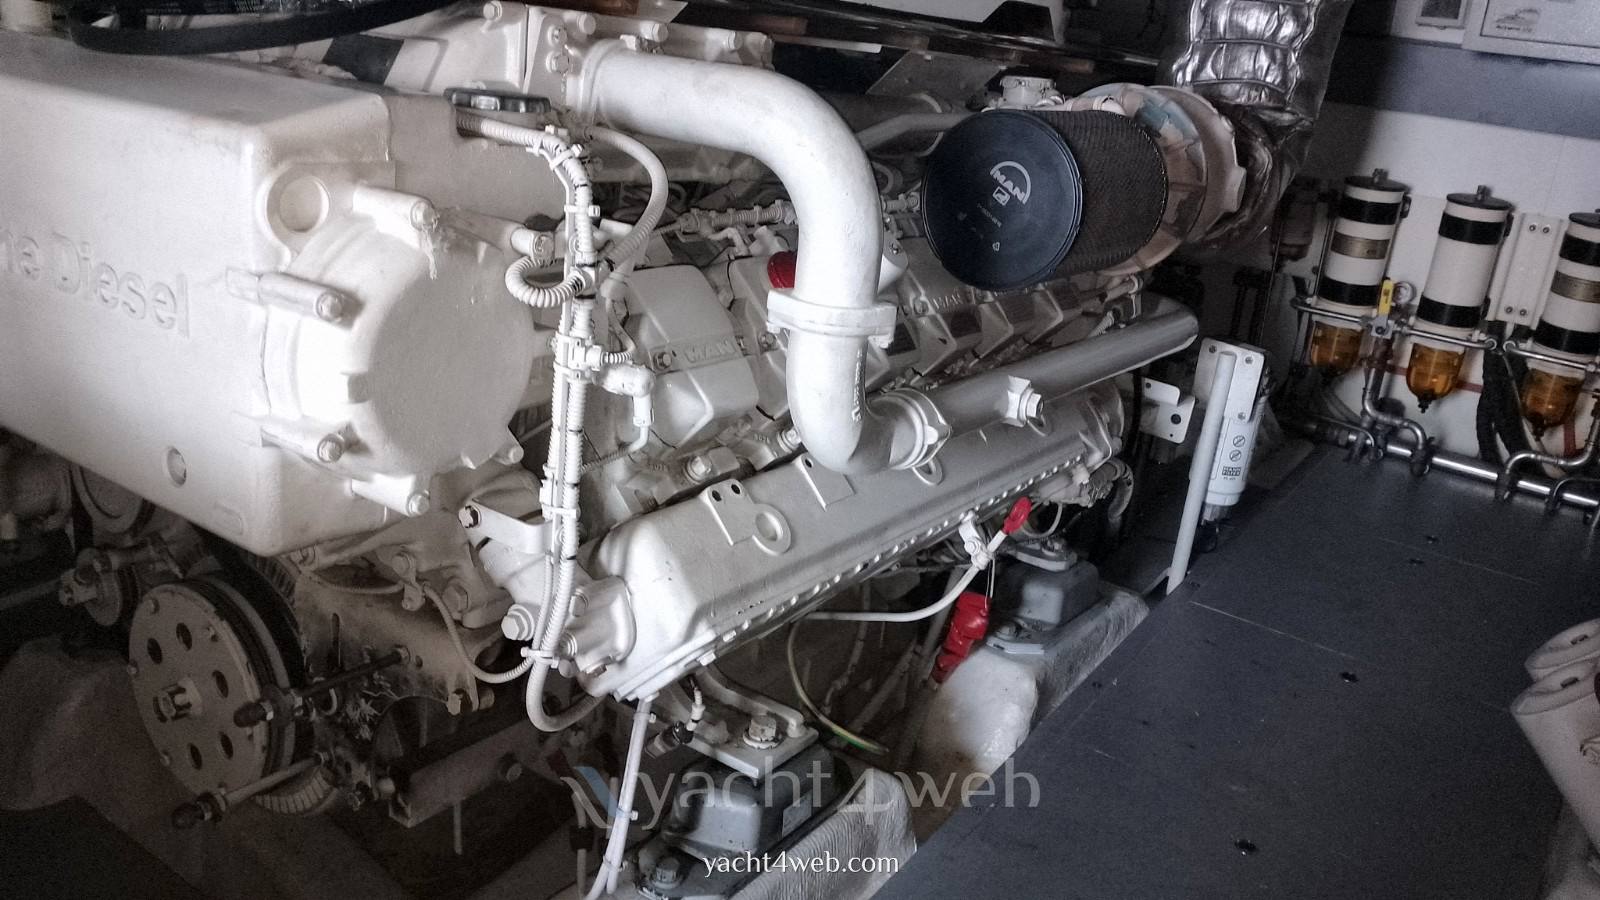 Rizzardi Technema 65 posillipo motor boat